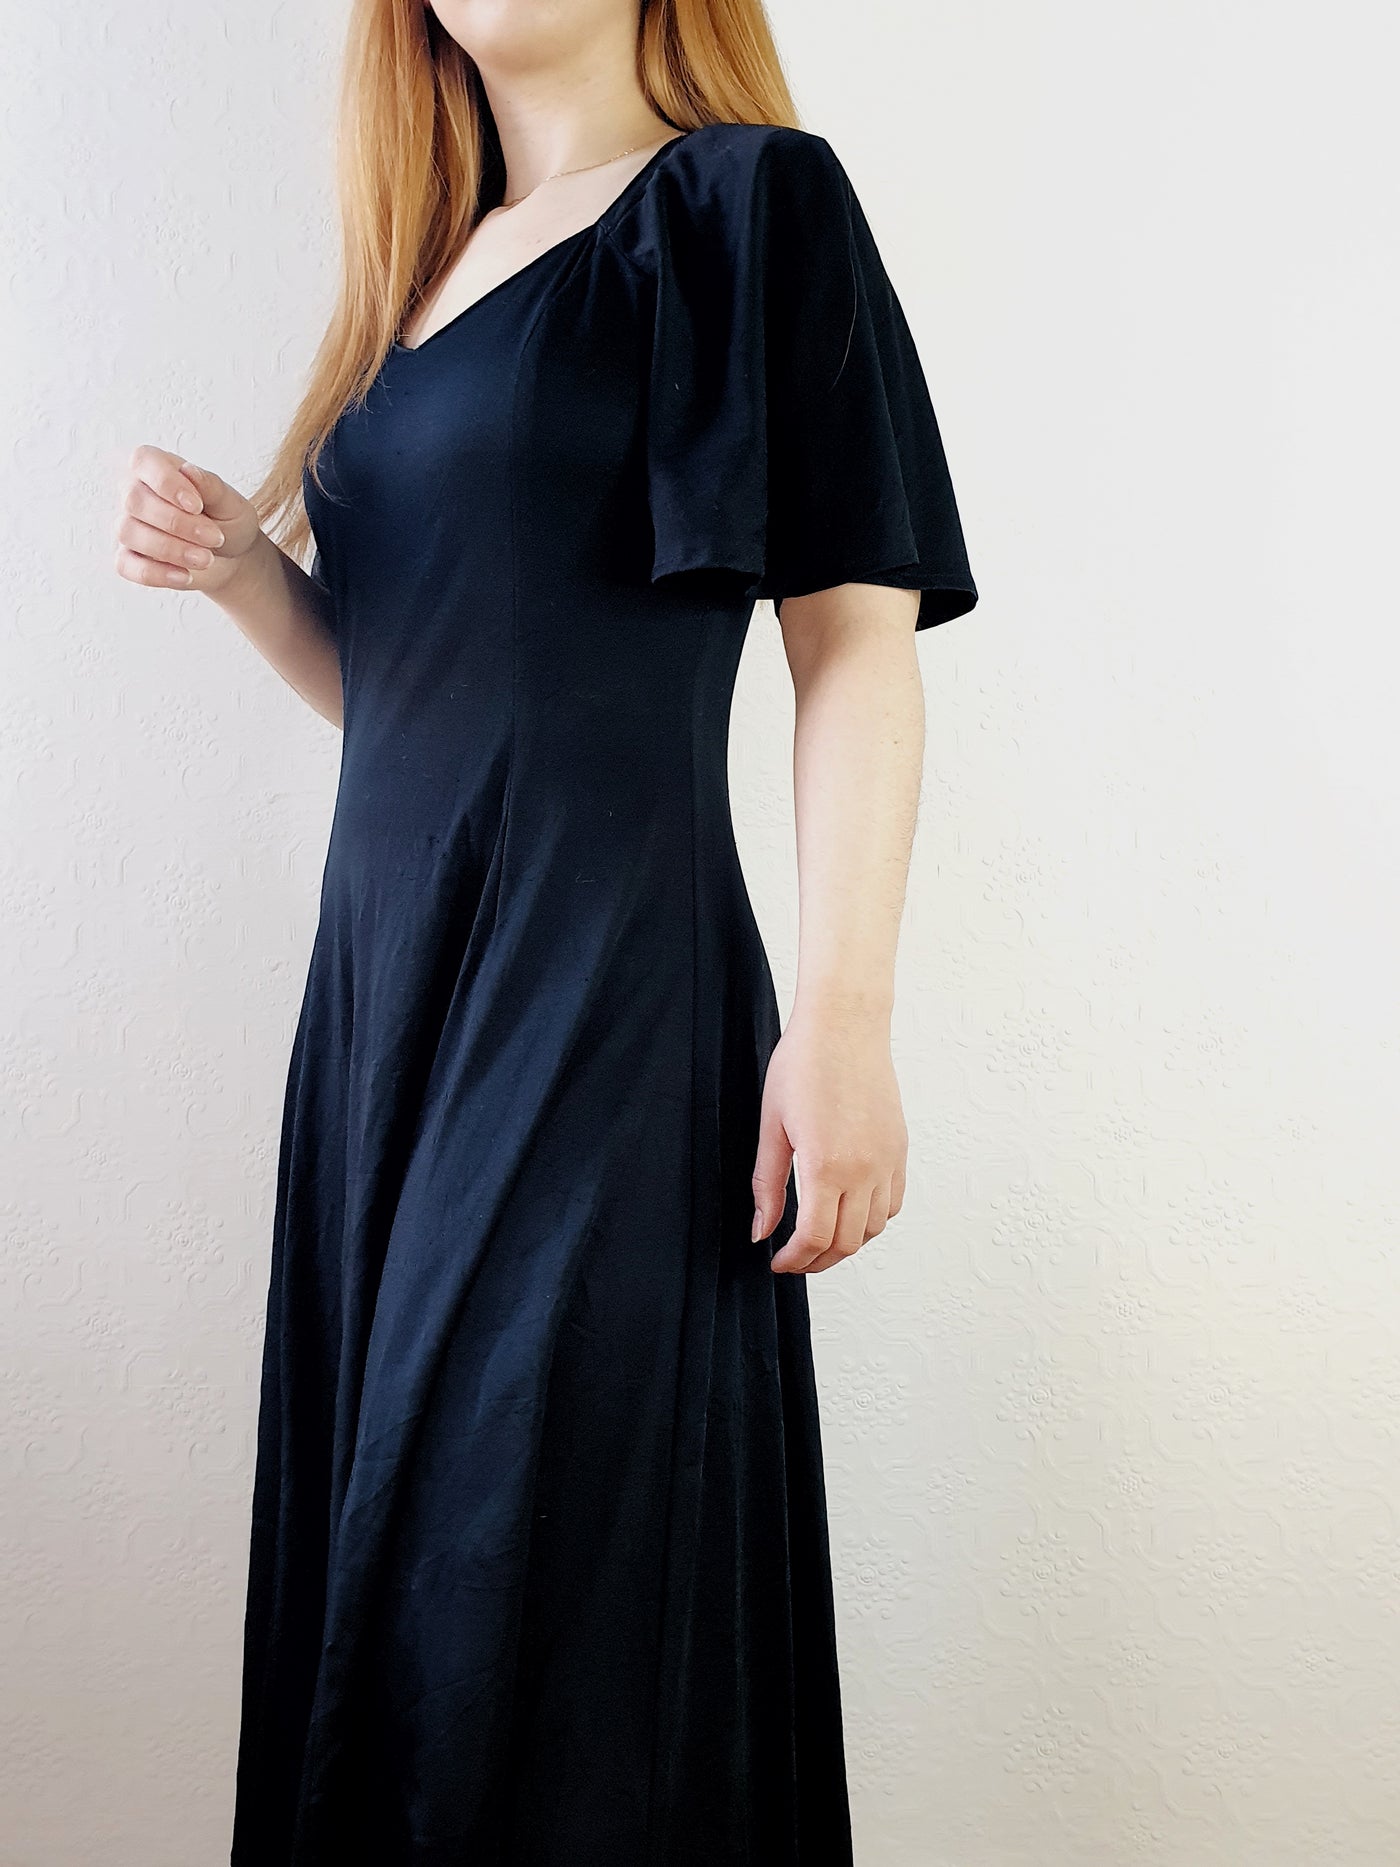 Vintage 70s Angel Sleeve Black Dress - S/M